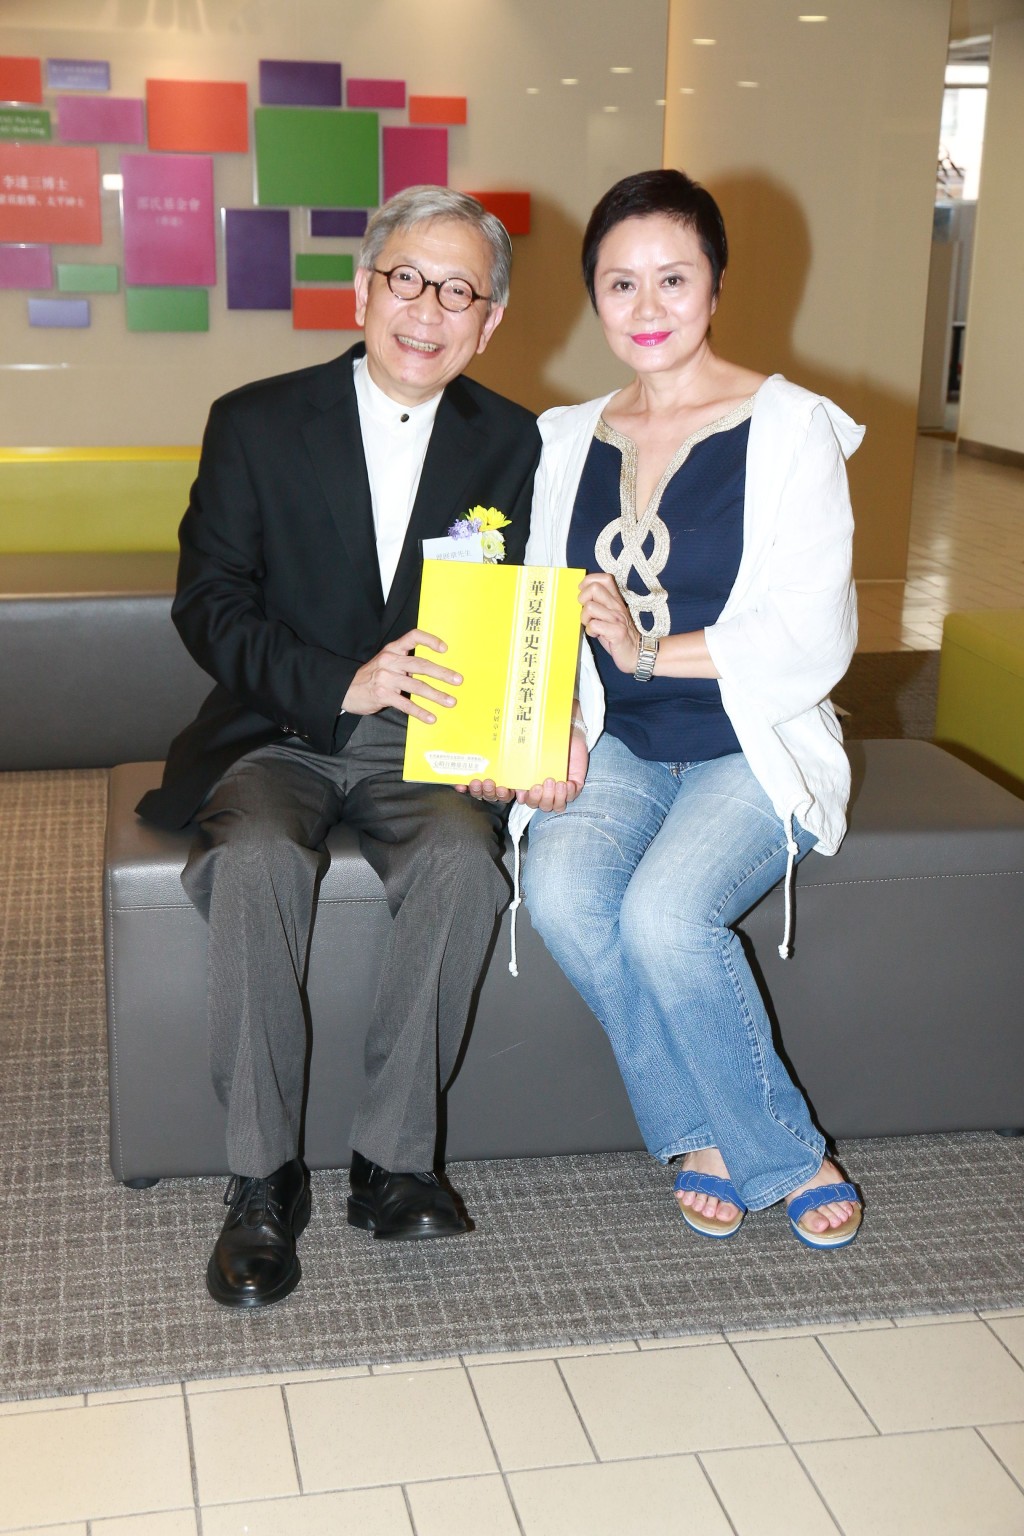 林建明的丈夫是香港电视媒体从业员兼管理层曾展章。